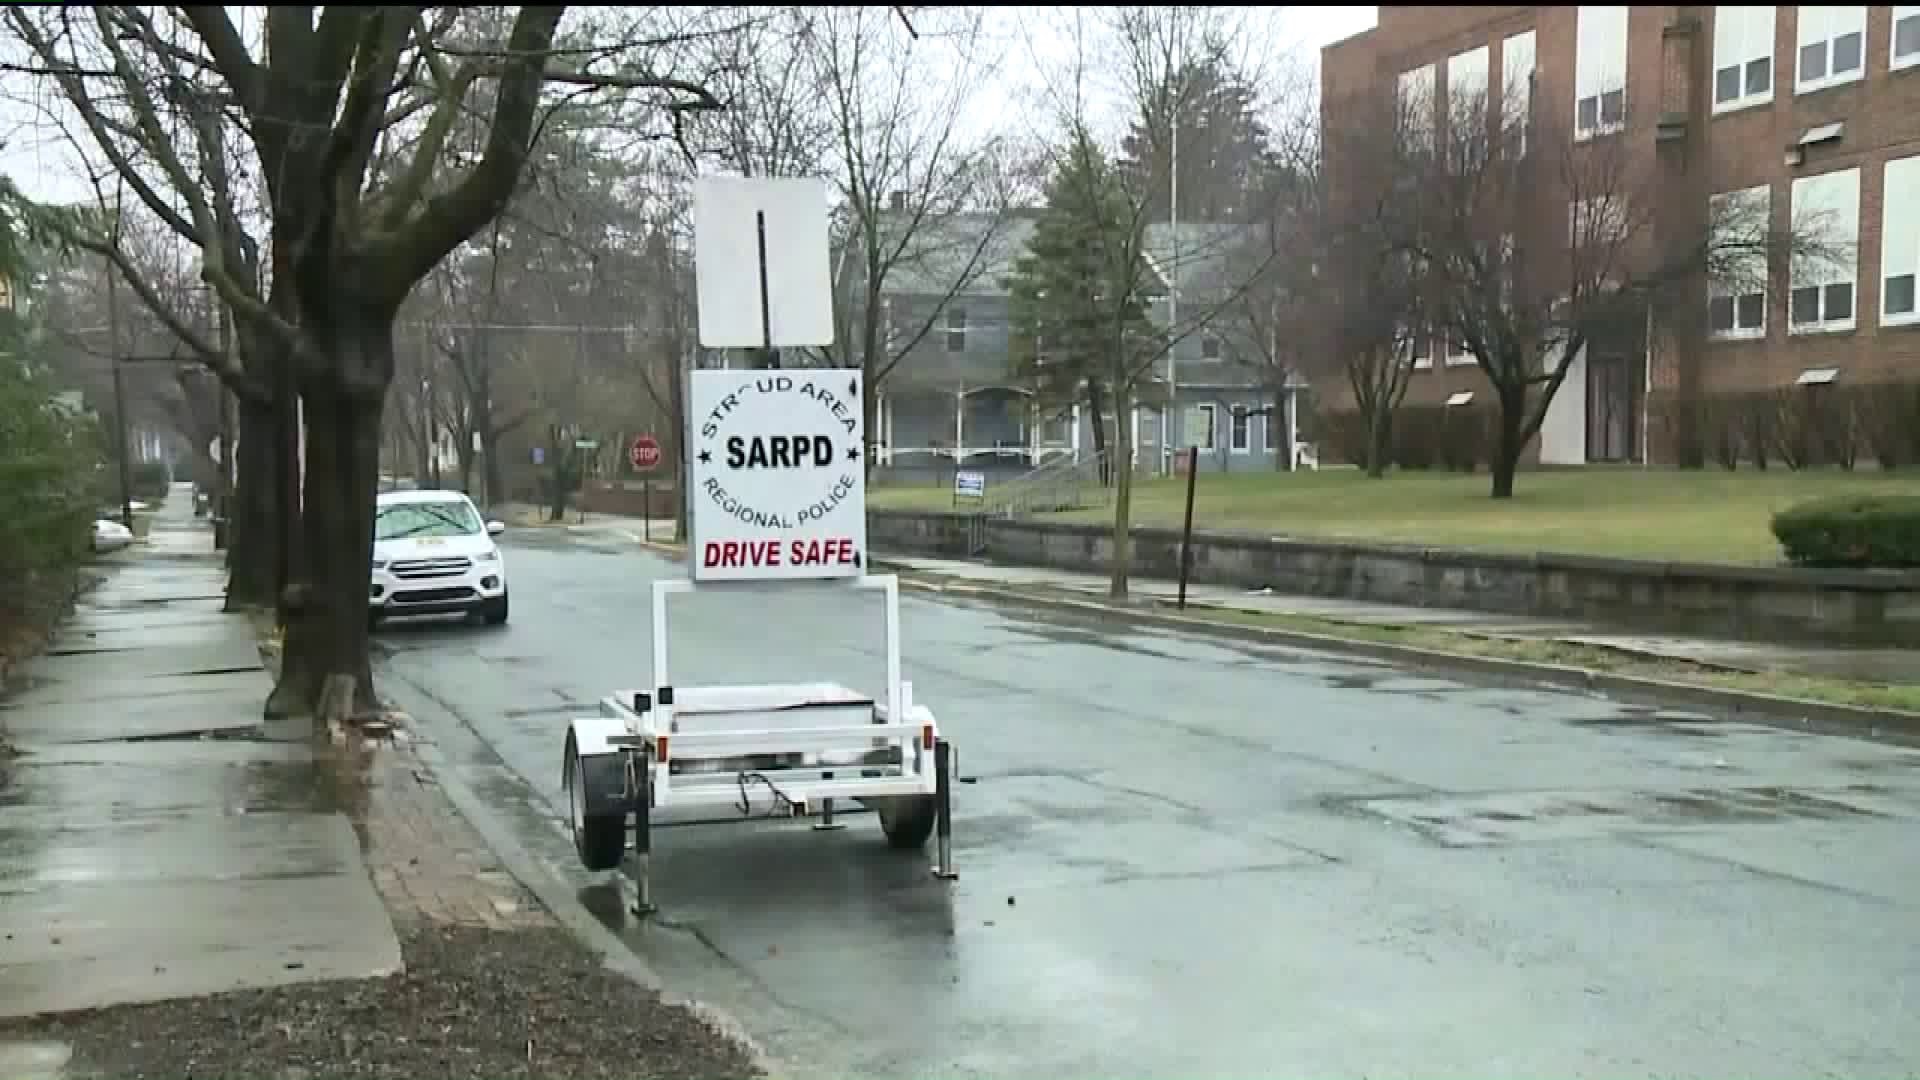 Speed Radar Placed On Residential Road in Stroudsburg